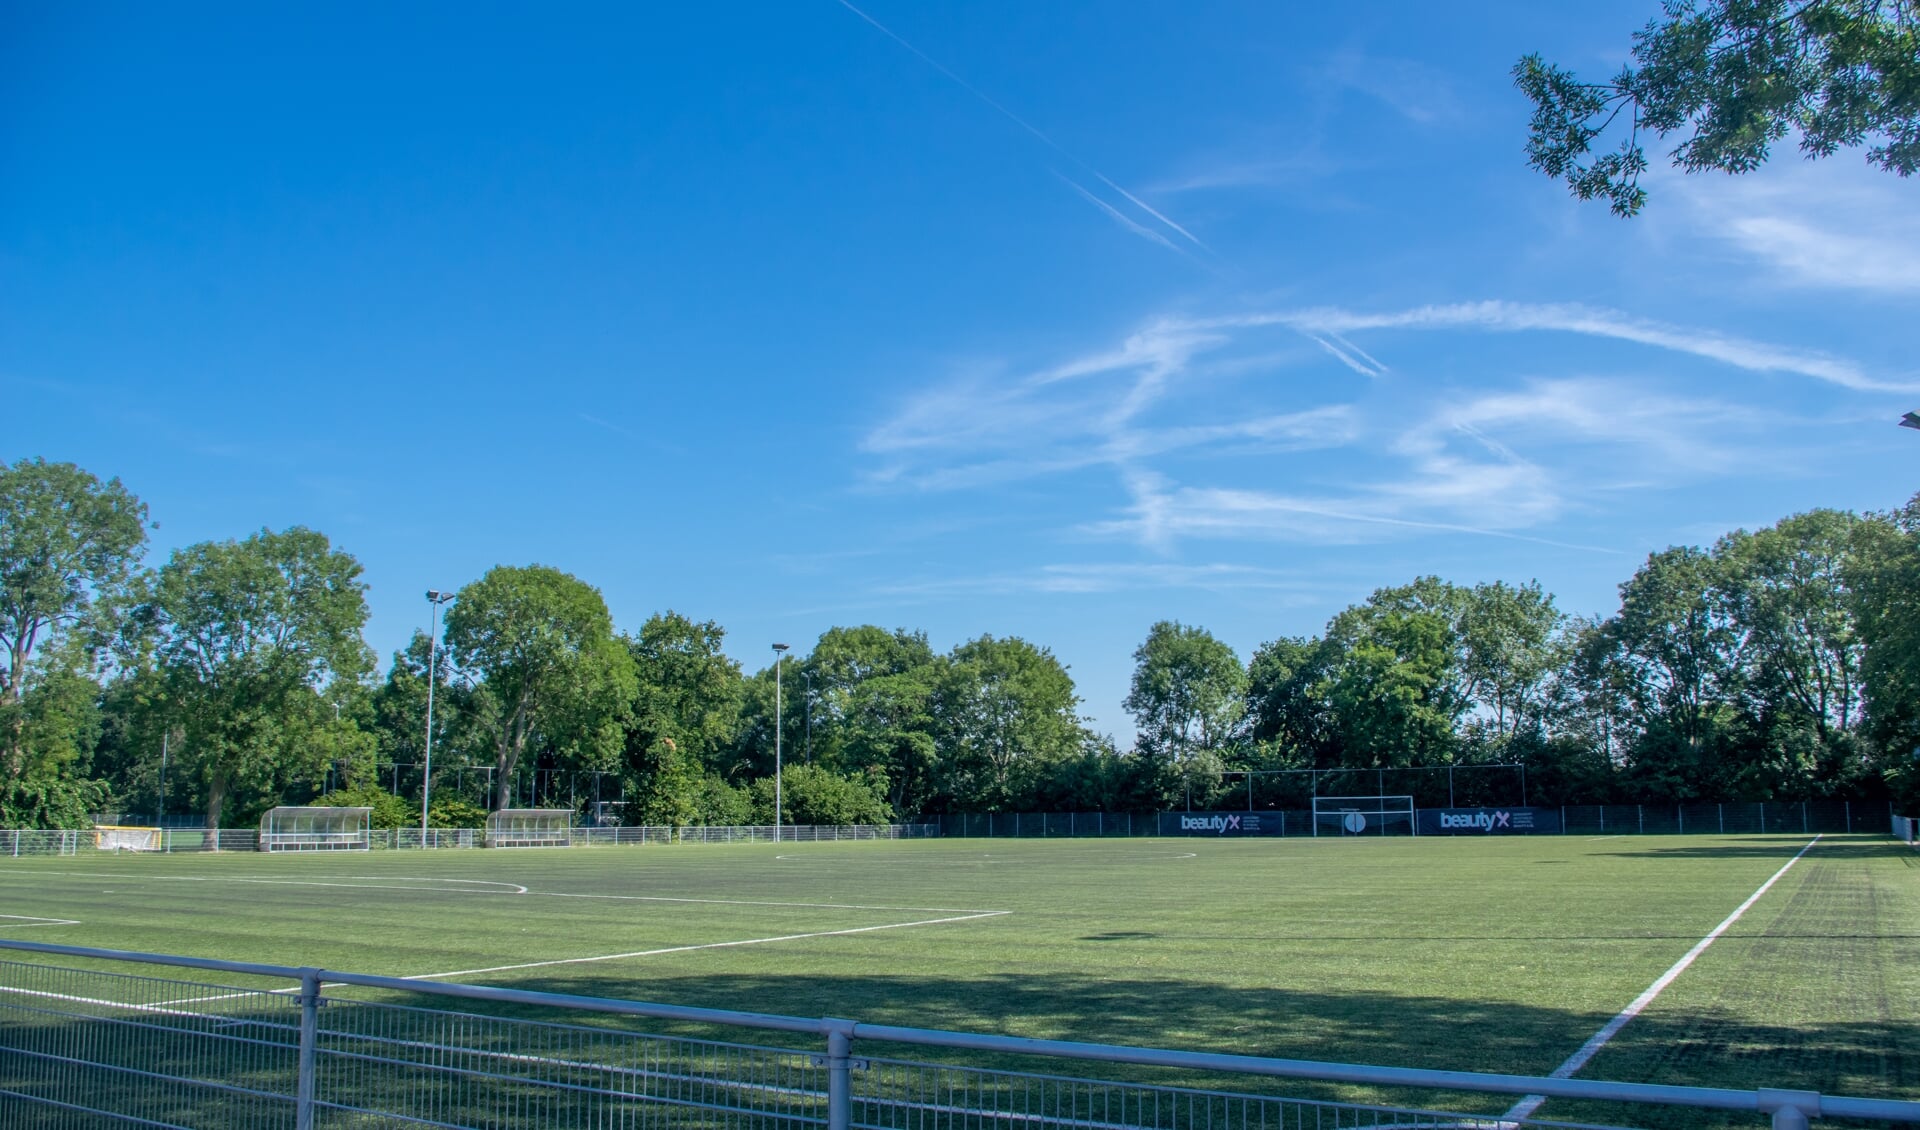 RCL is alleen gebruiker van de voetbalvelden in De Bloemerd, het onderhoud en de vervanging komt voor rekening van de gemeente. 